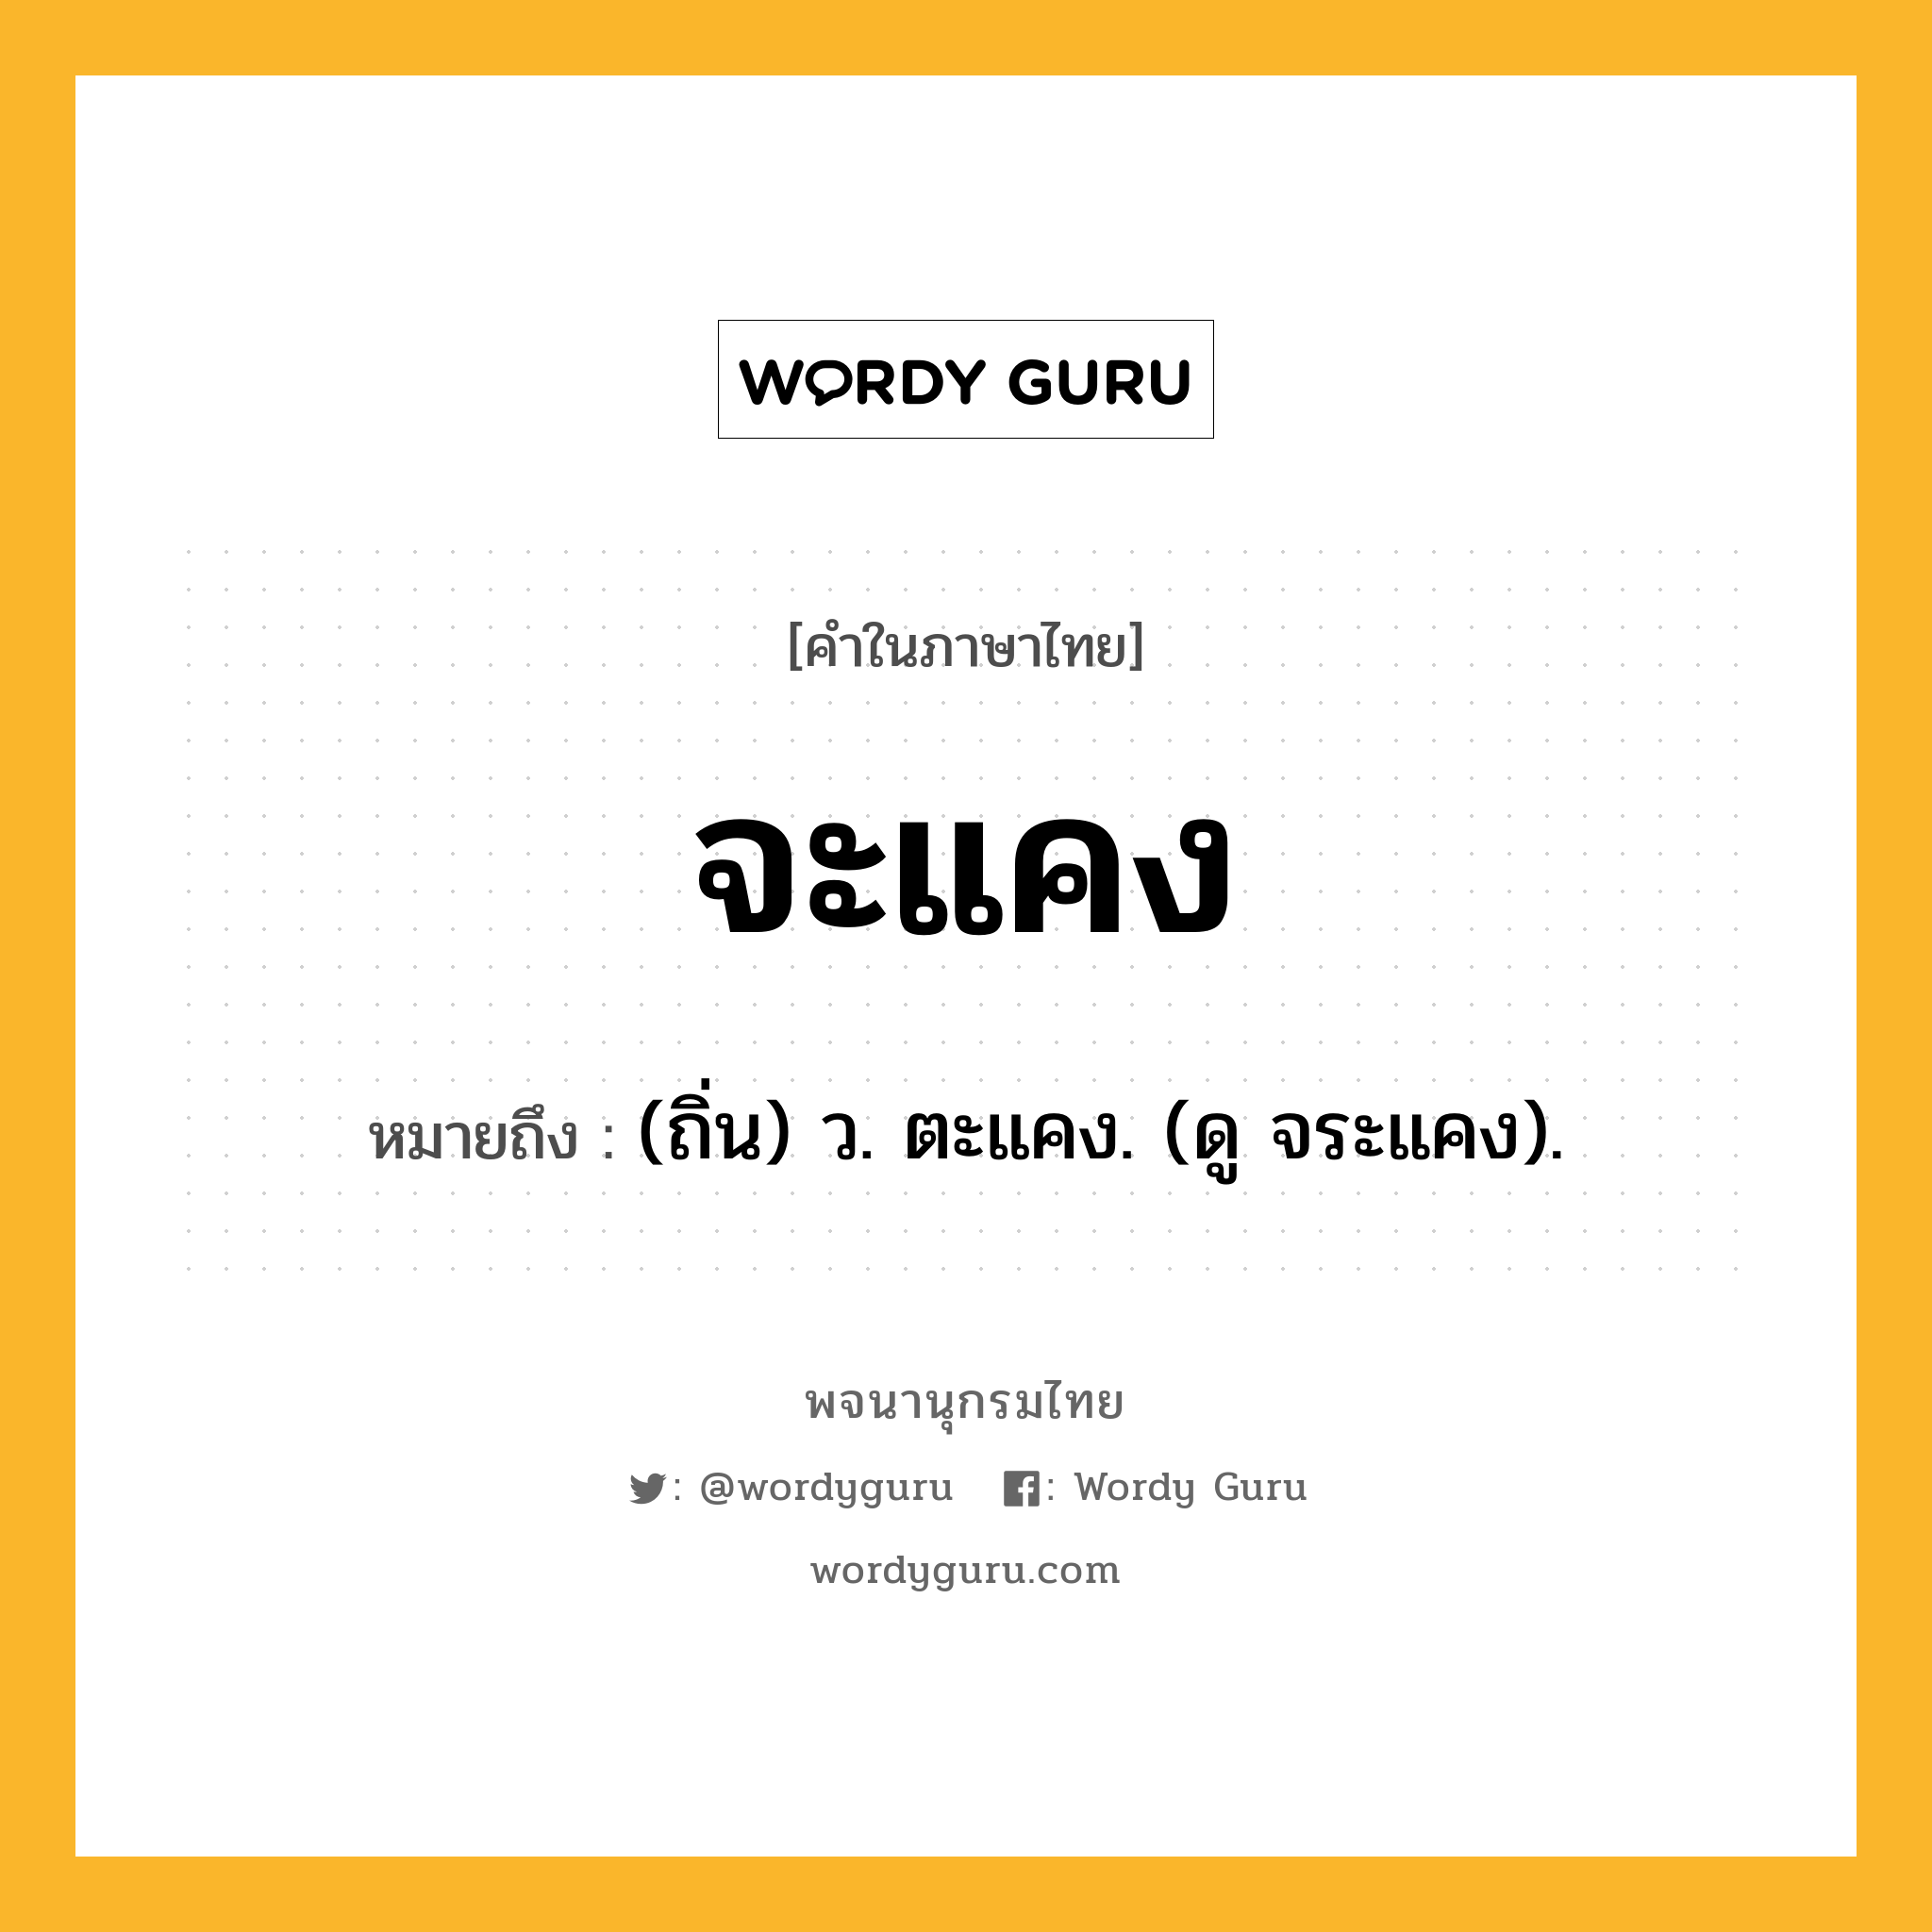 จะแคง หมายถึงอะไร?, คำในภาษาไทย จะแคง หมายถึง (ถิ่น) ว. ตะแคง. (ดู จระแคง).